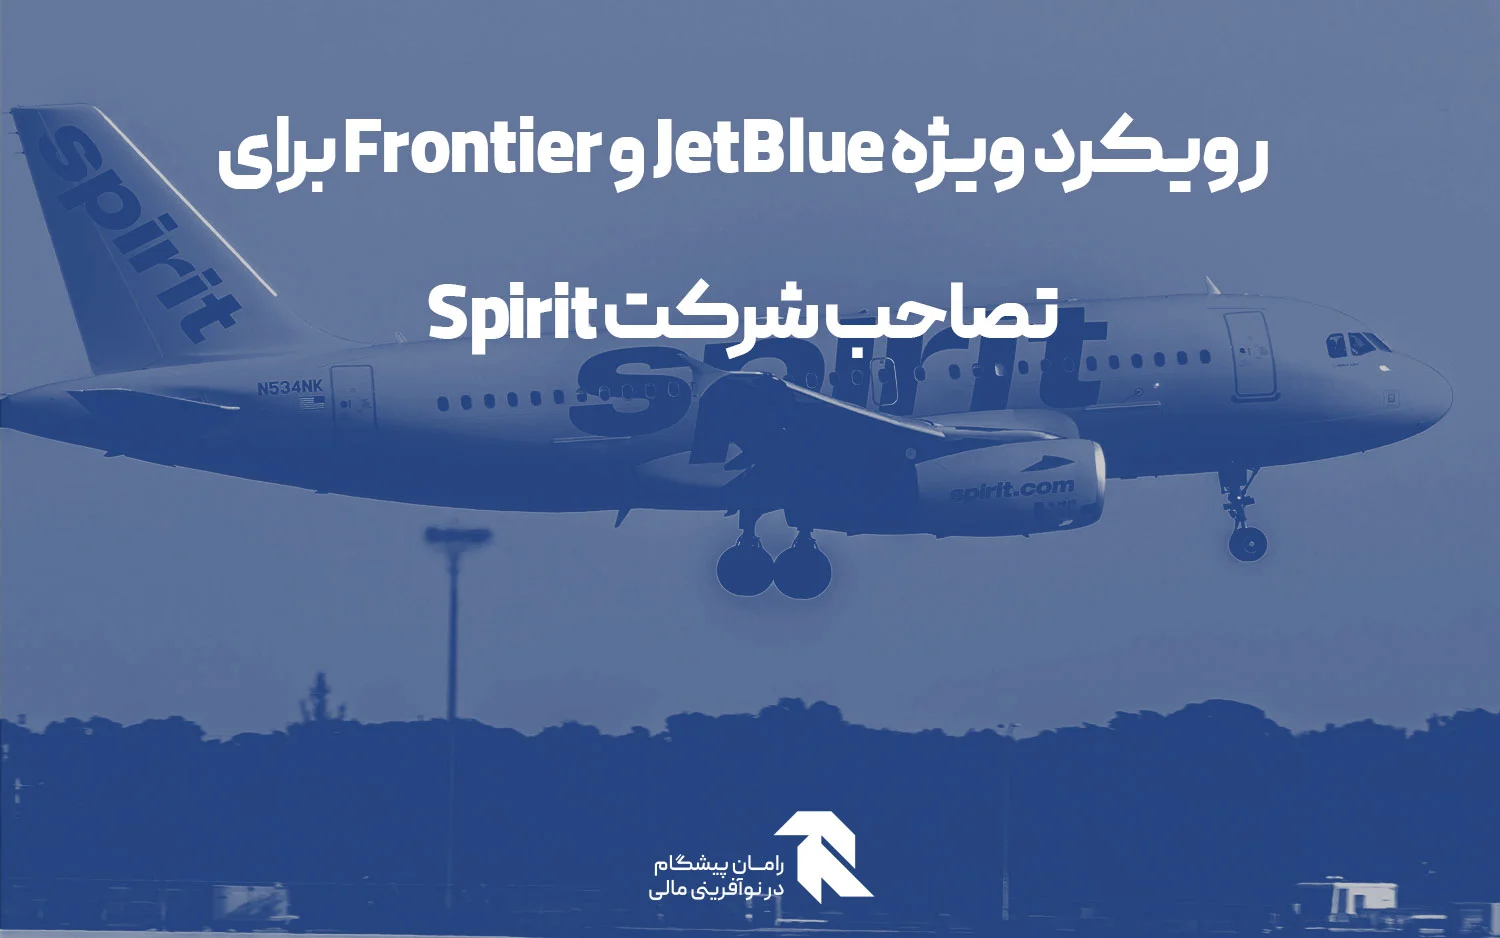 رویکرد ویژه JetBlue و Frontier برای تصاحب شرکت Spirit